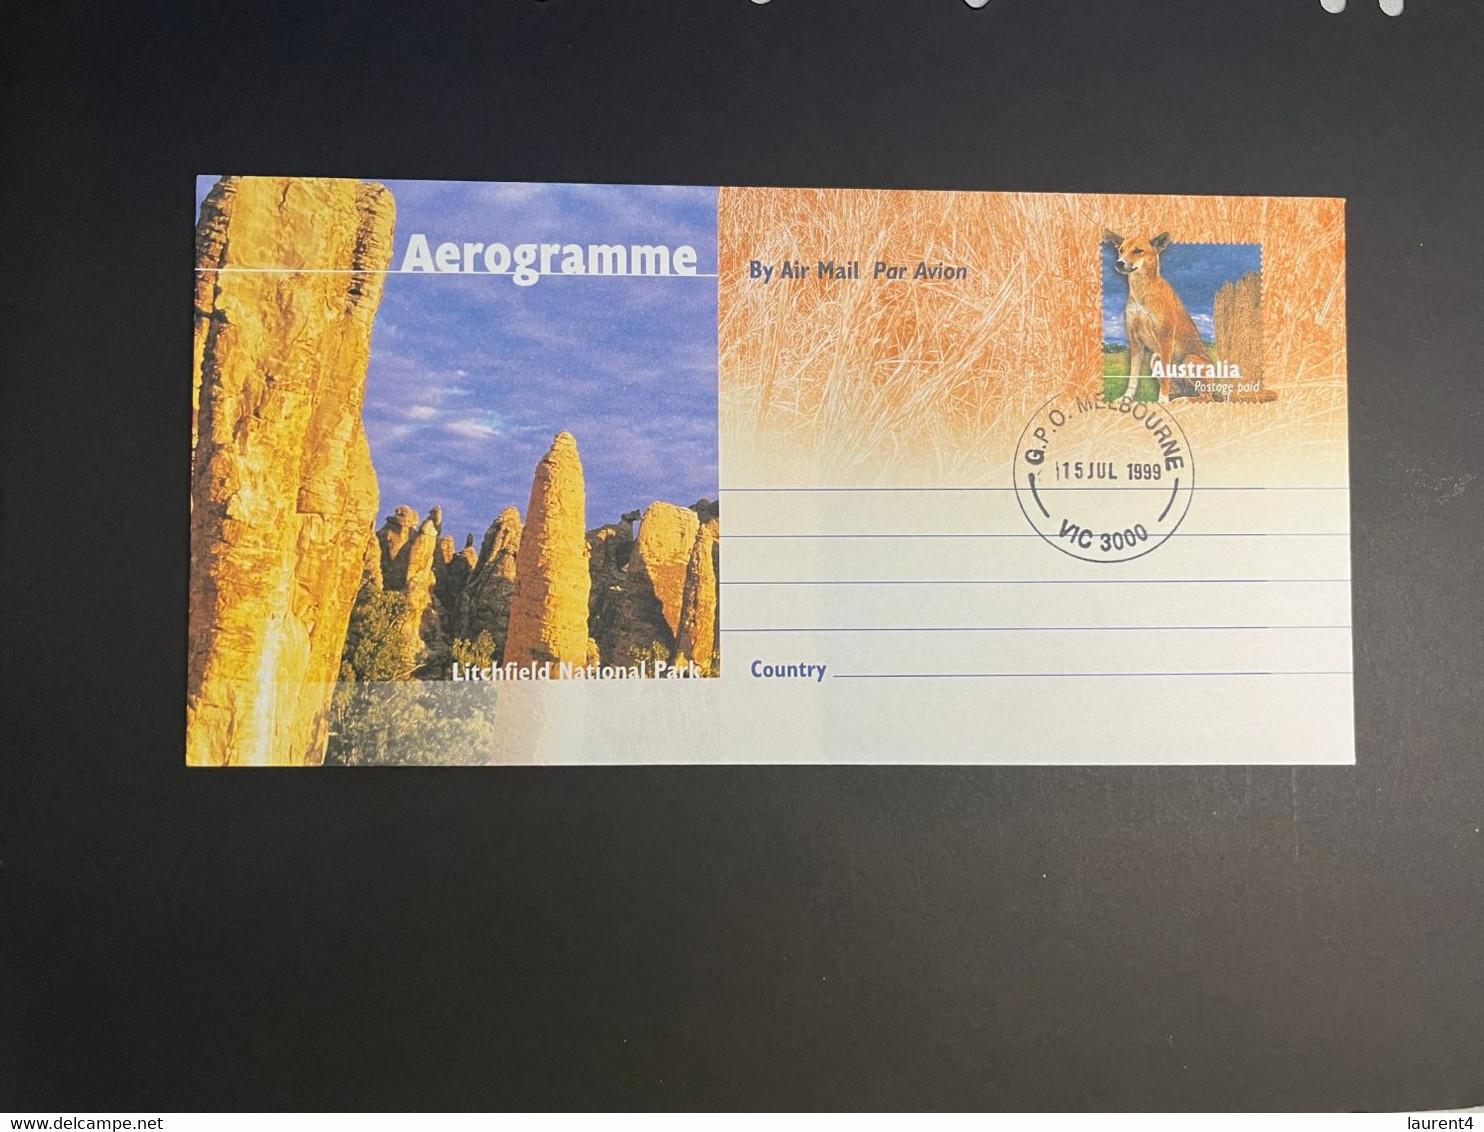 (3 N 45 A) Australia Aerogramme - Australian - Around Australia (1999 x 5 aerogramme)